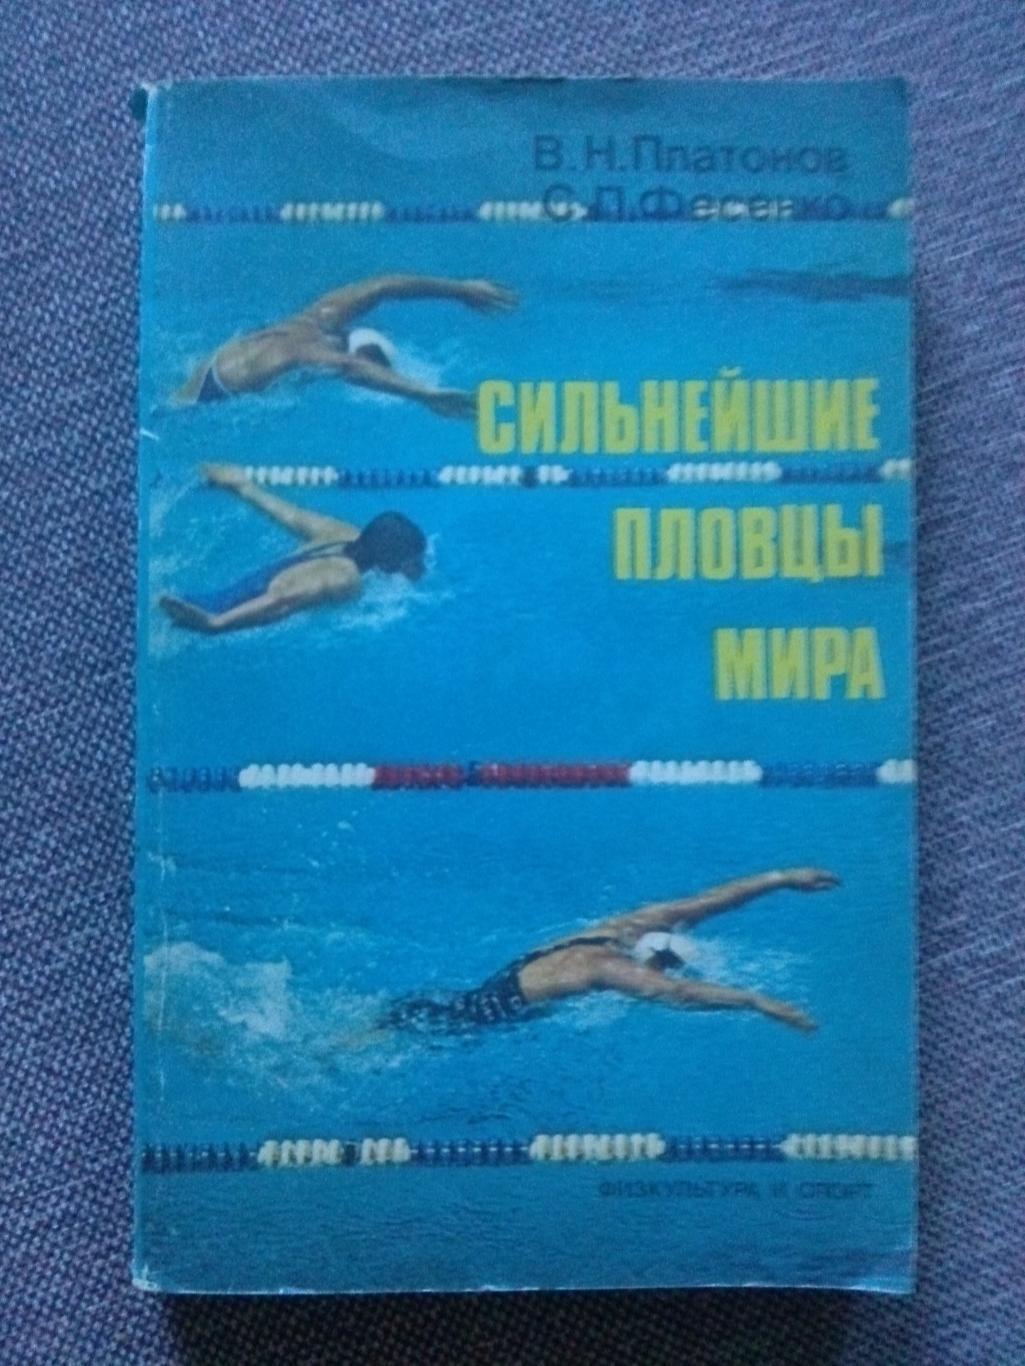 В.Н. Платонов , С.П. Фесенко - Сильнейшие пловцы мира 1990 г. ФиС Плавание